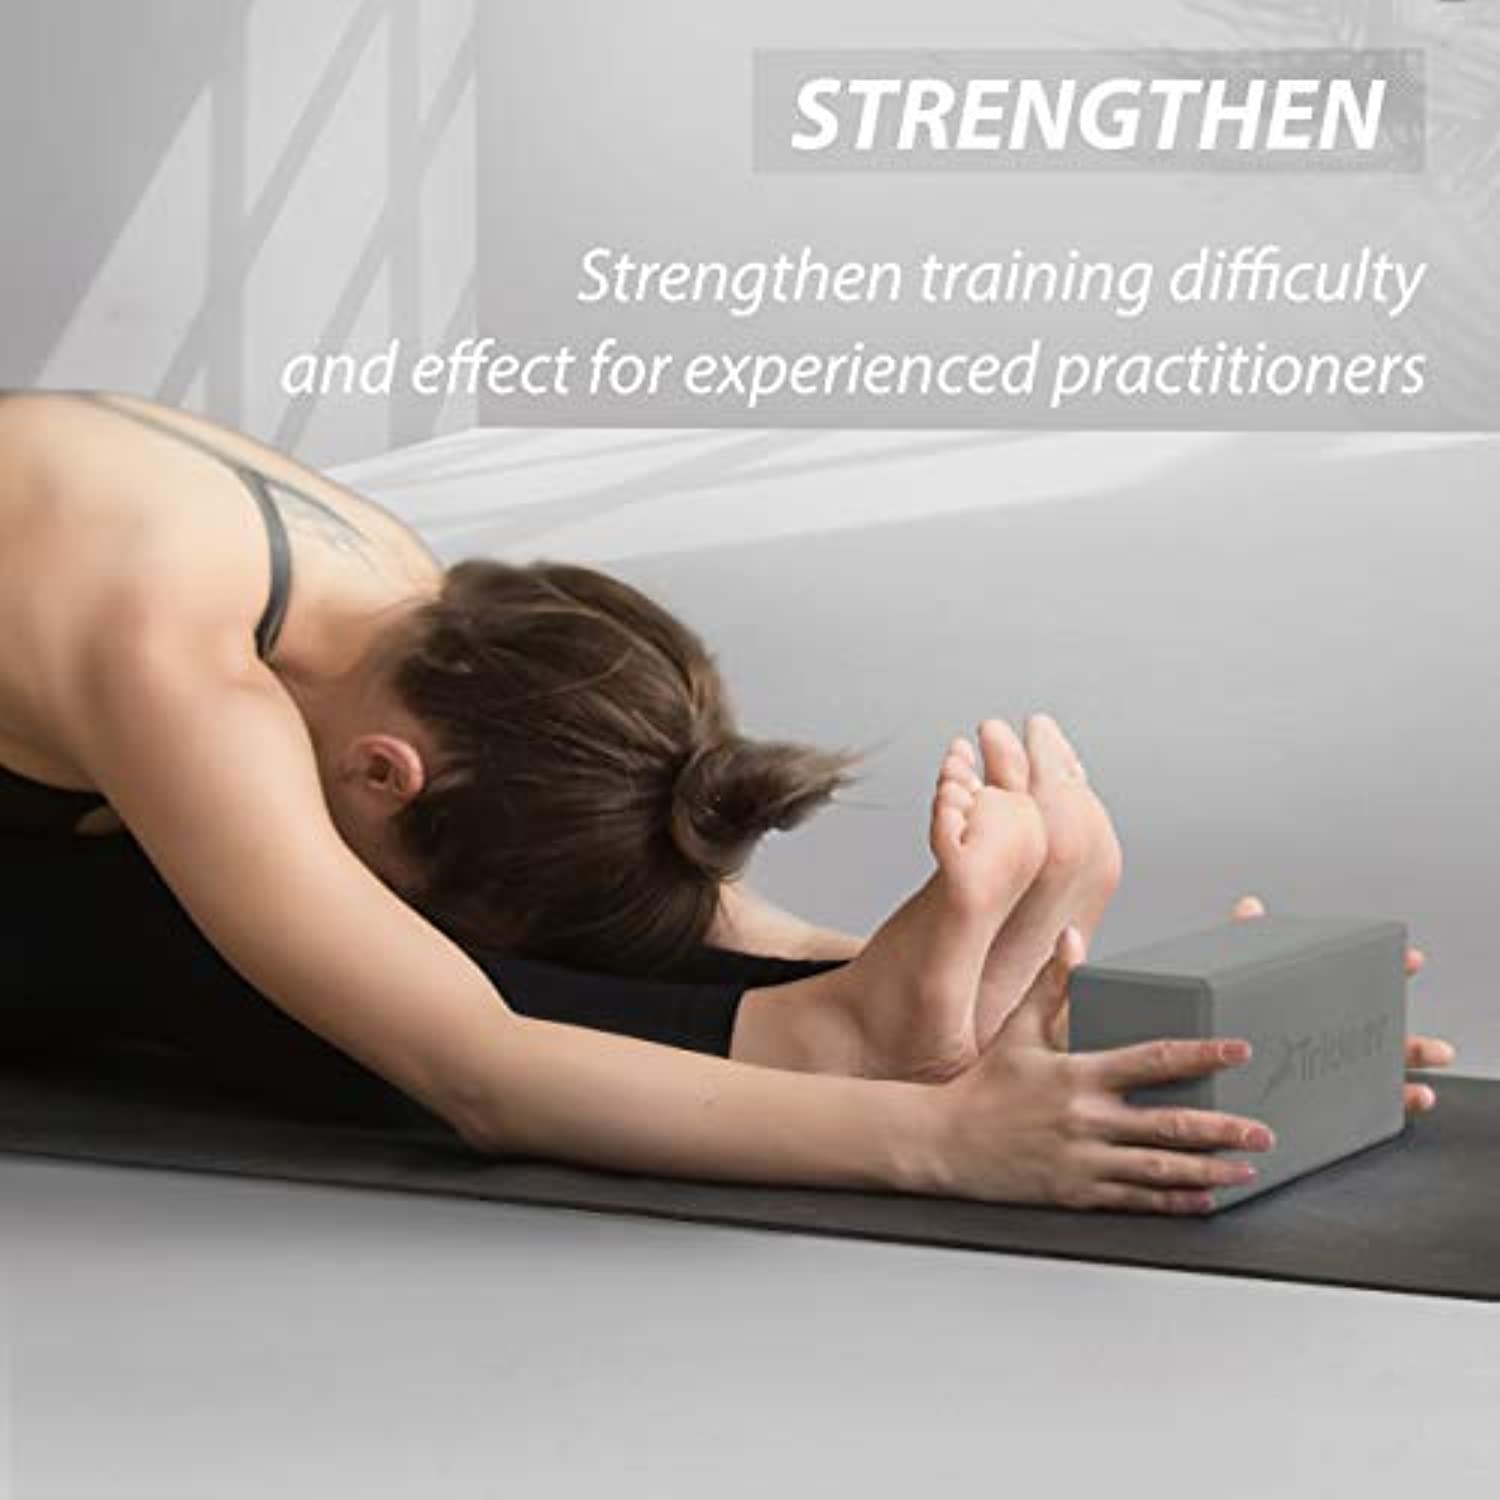 OEM Cubo De Yoga Bloque De Flexibilidad Equilibrio Y Postura